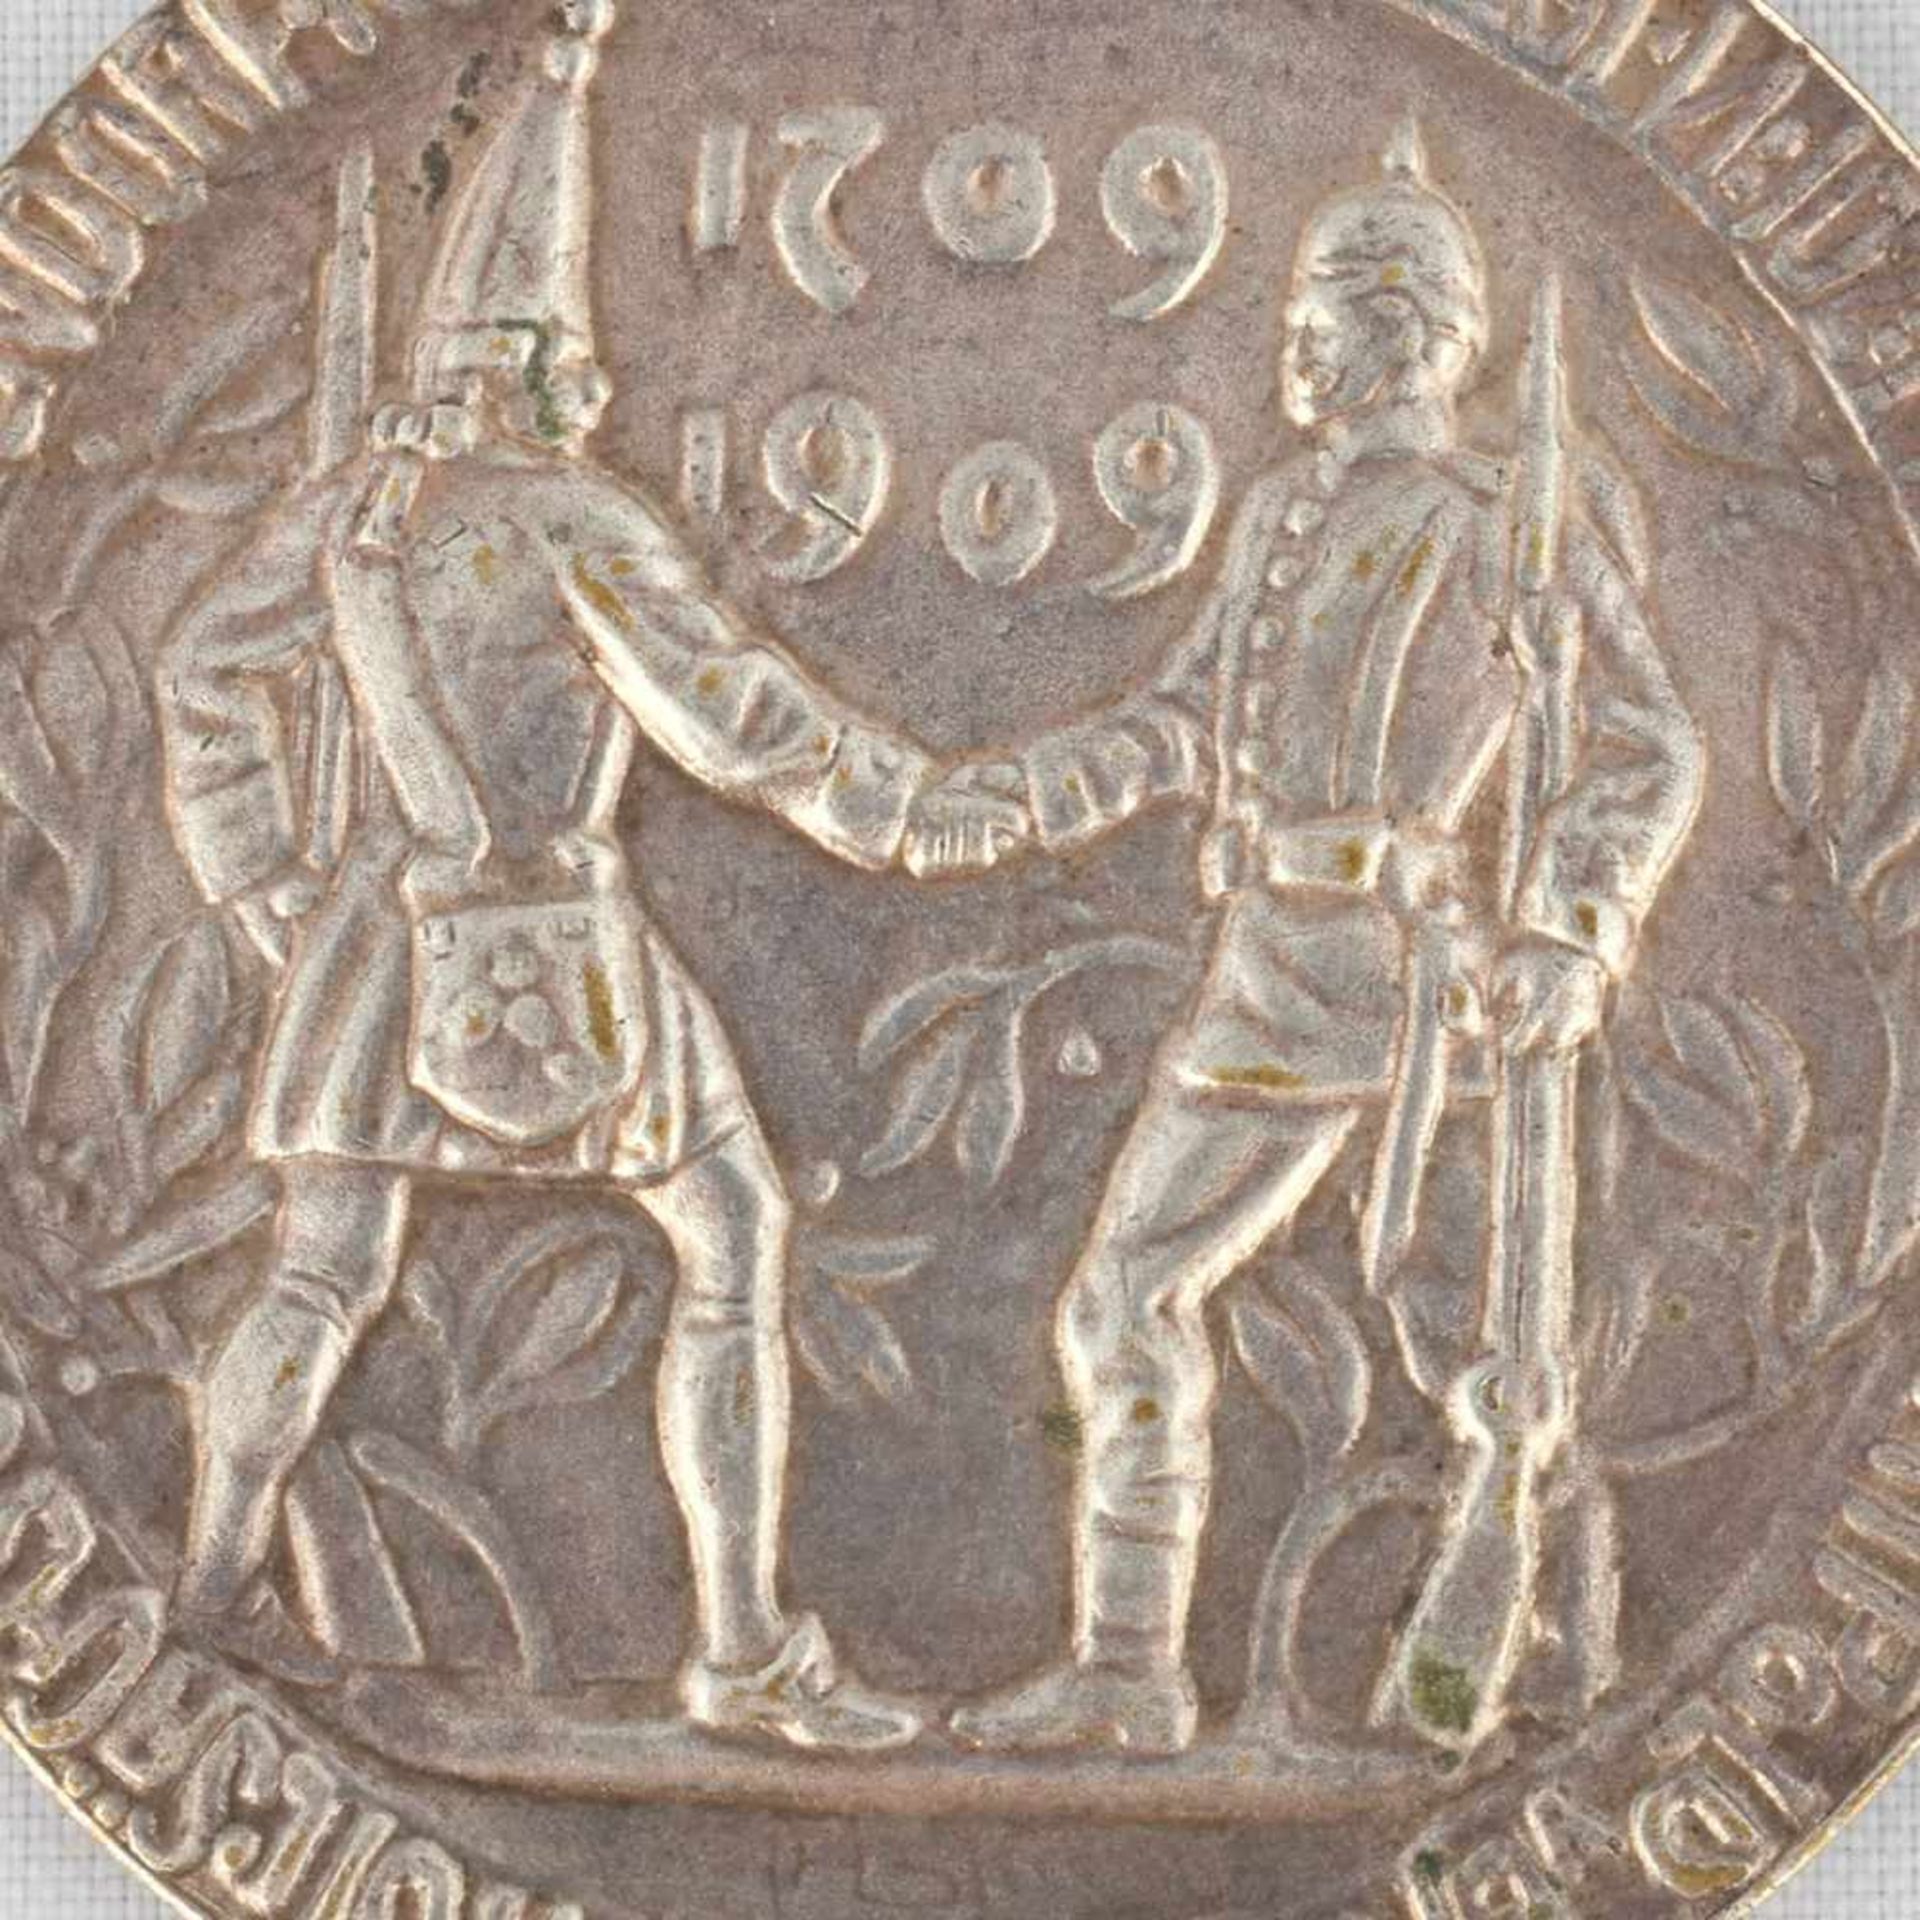 Medaille Kaiserreich - Bayern 1909 Bronze versilbert, 200 jähriges Jubiläum Königlich Sächsische